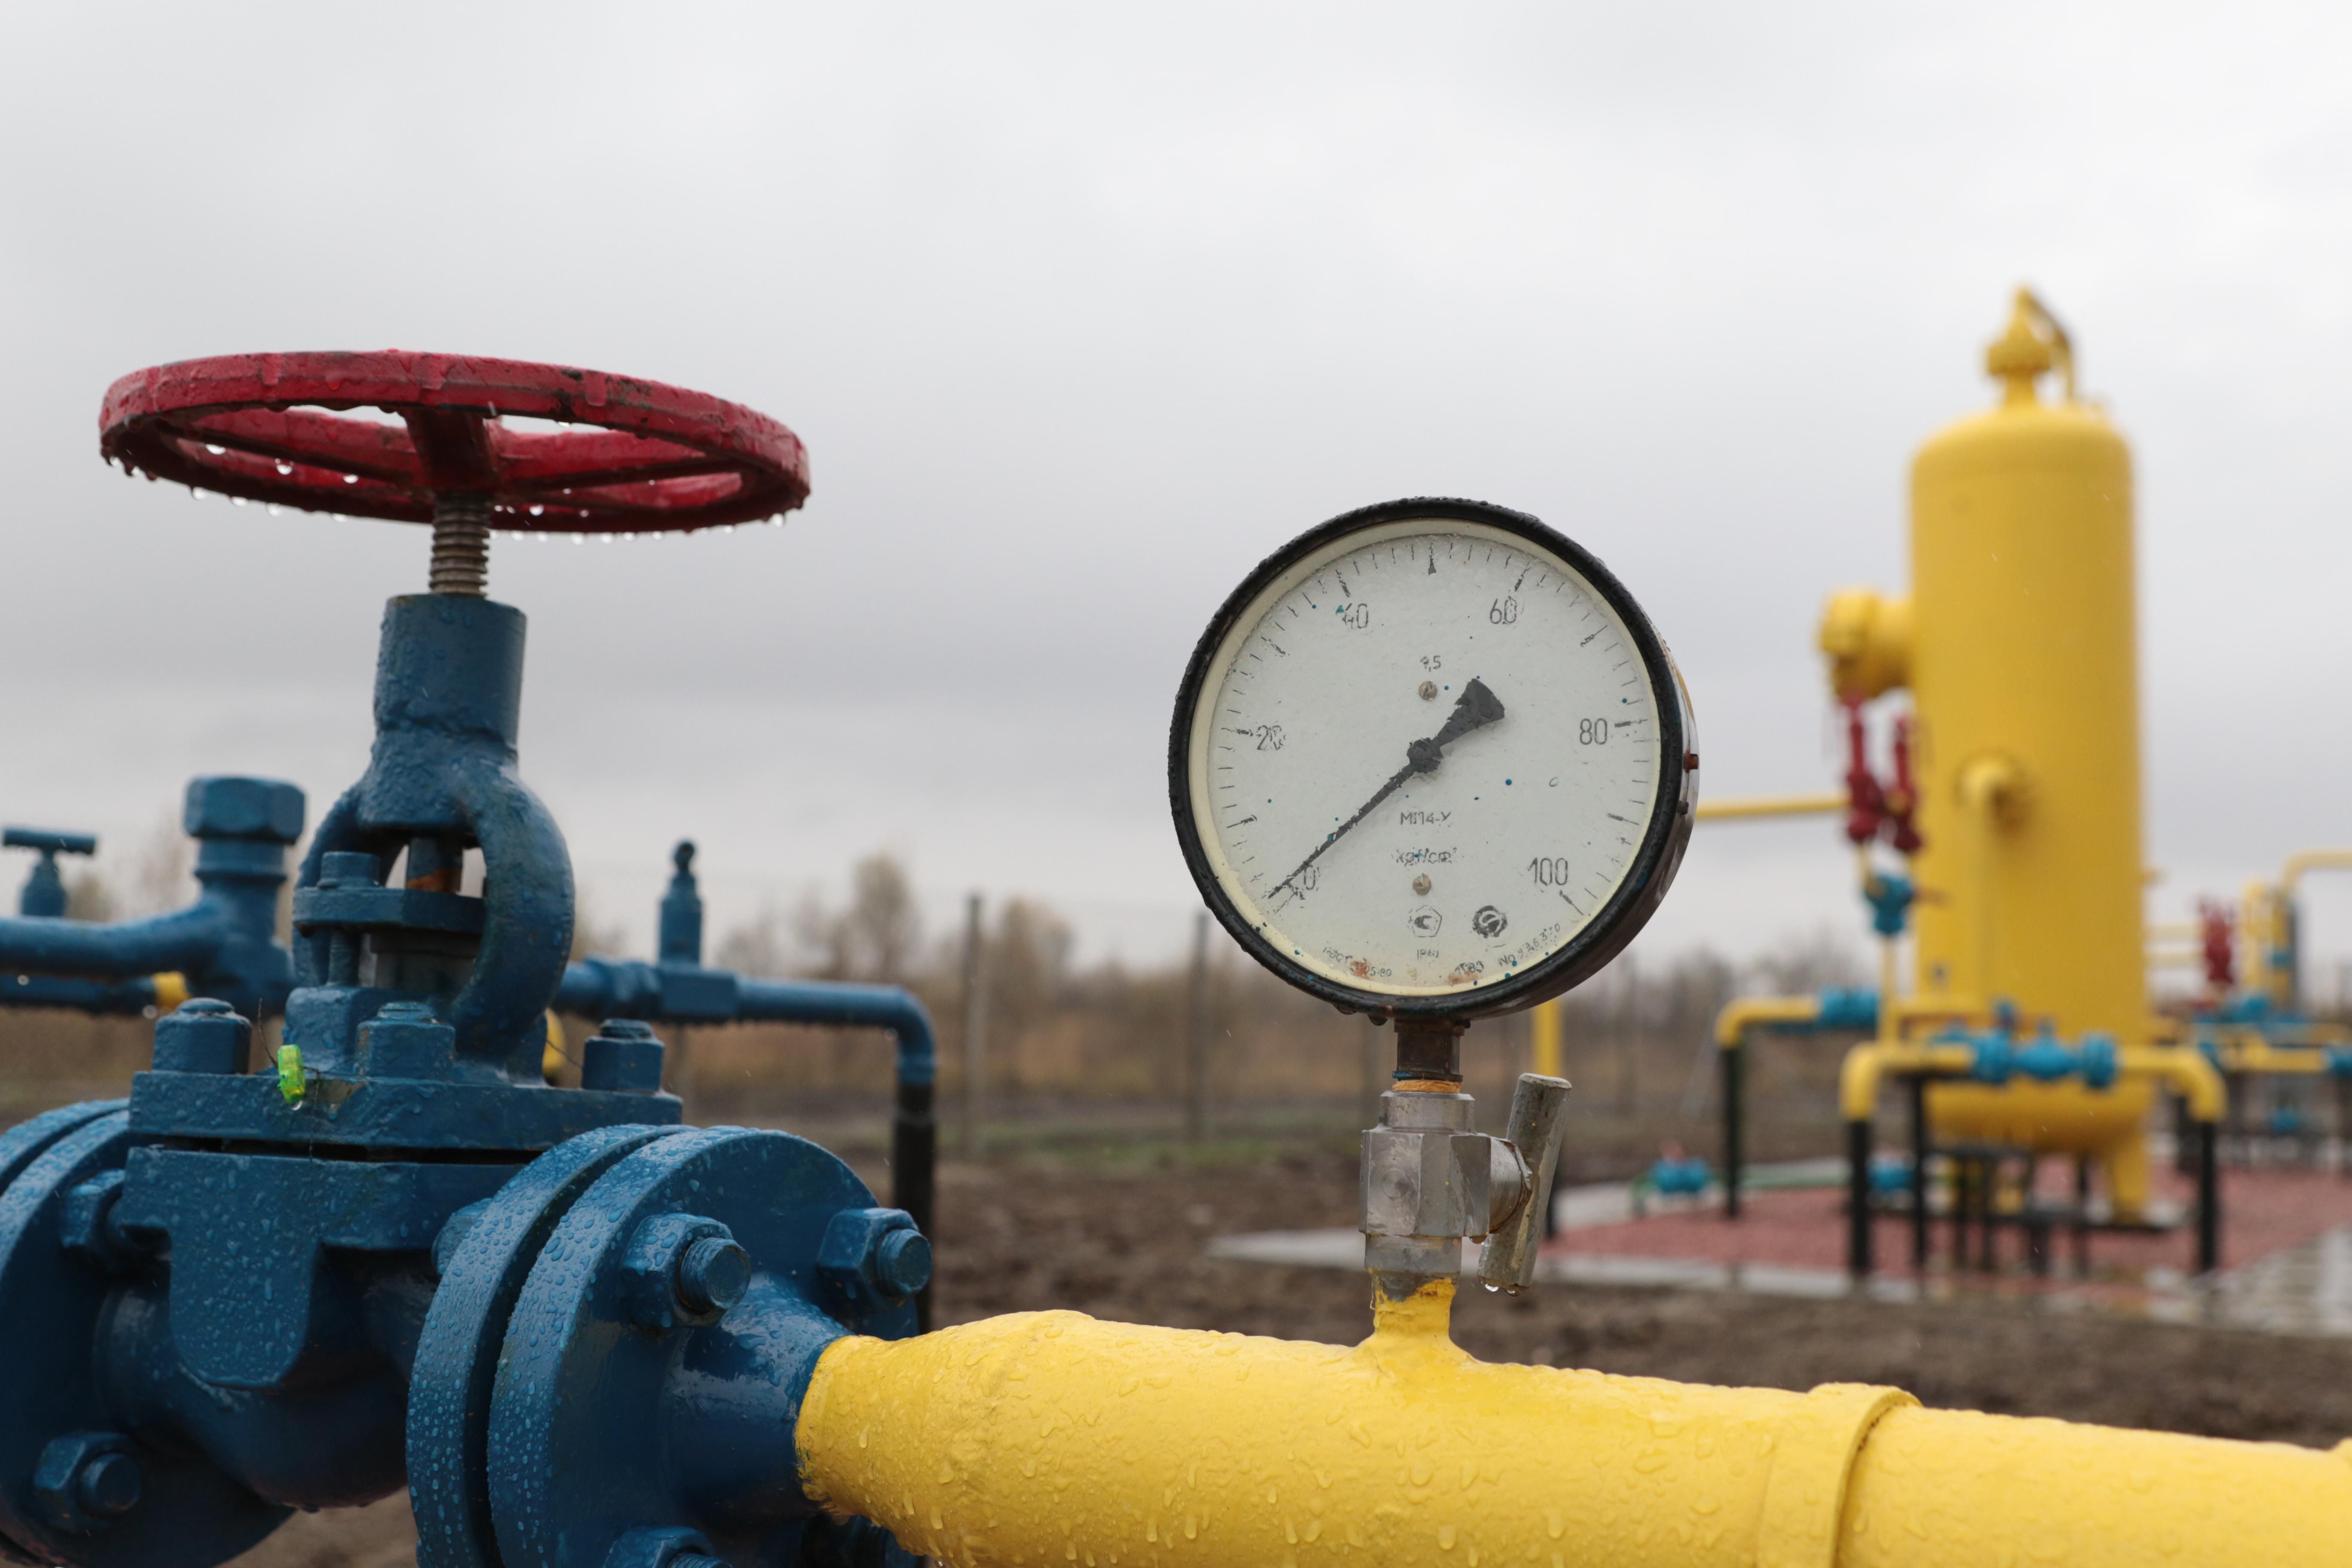 Цену на газ в Украине снизили: соответствует ли решение договоренностям с МВФ